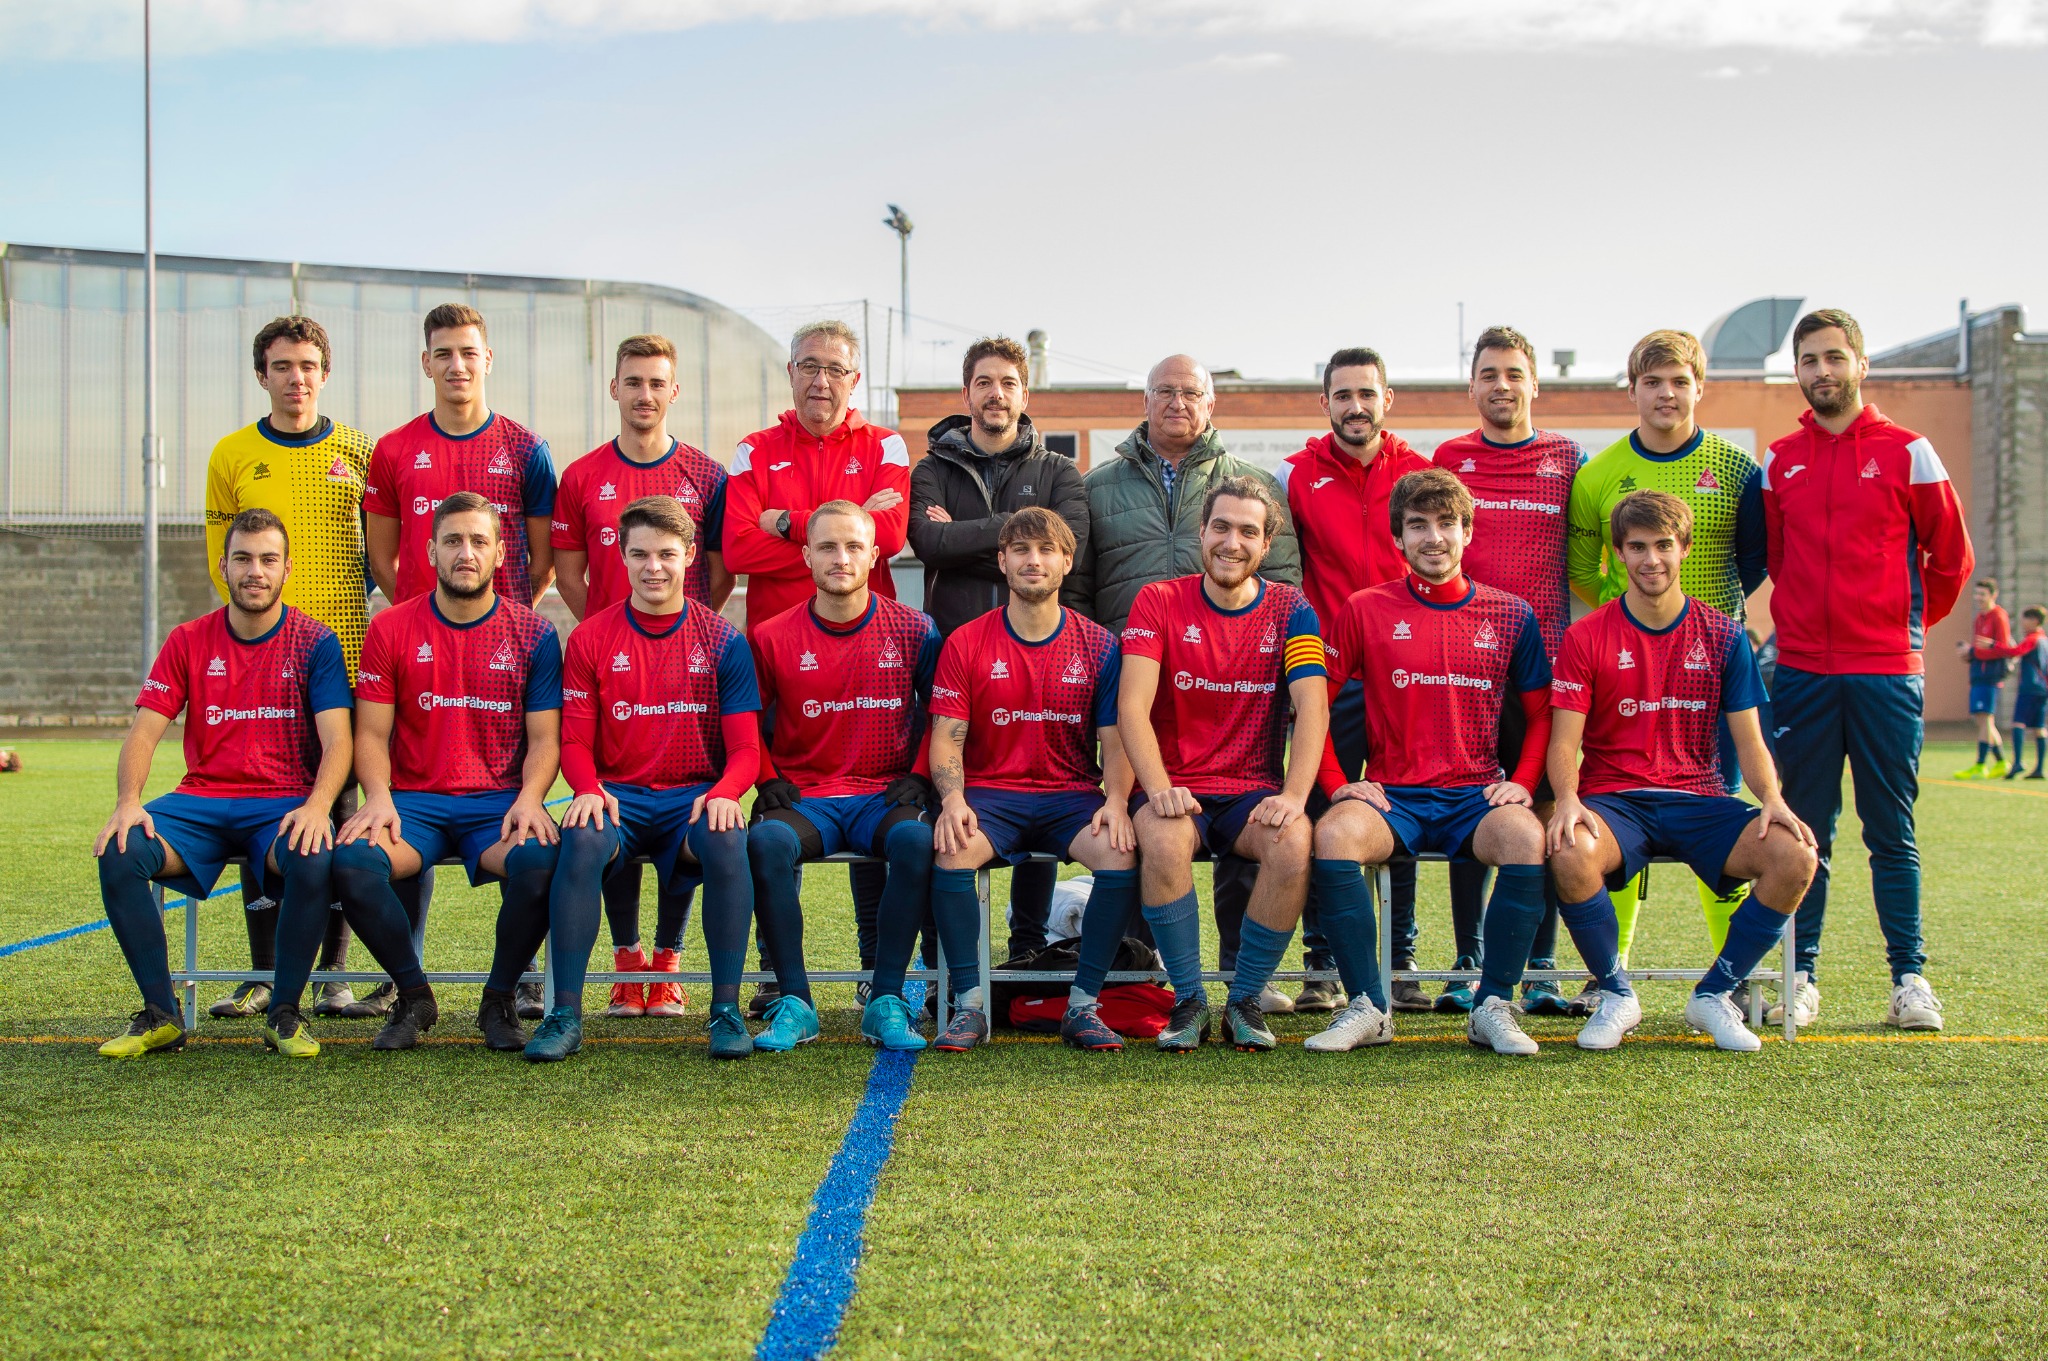 Plana Fàbrega Vic patrocina l’equip de futbol de l’Oar Vic 